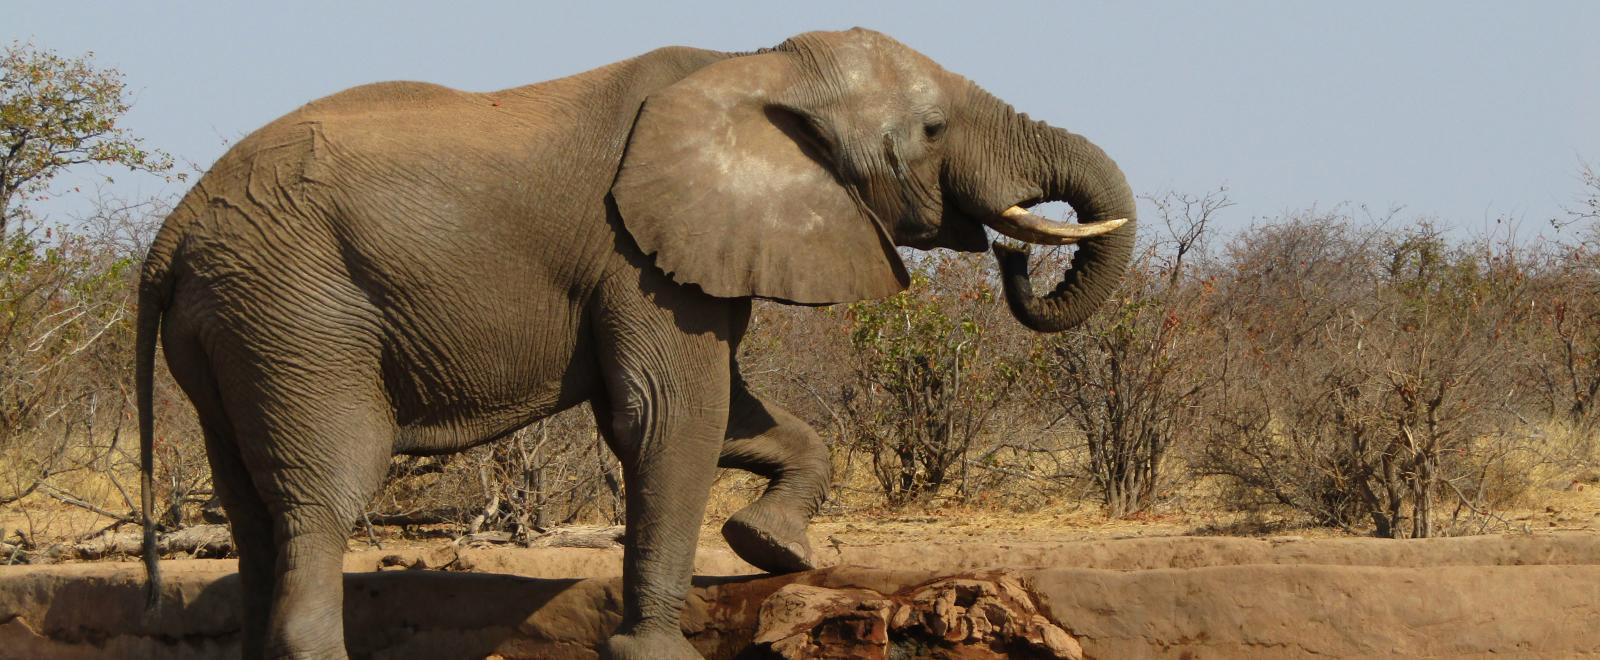 Volunteer with elephants in Botswana